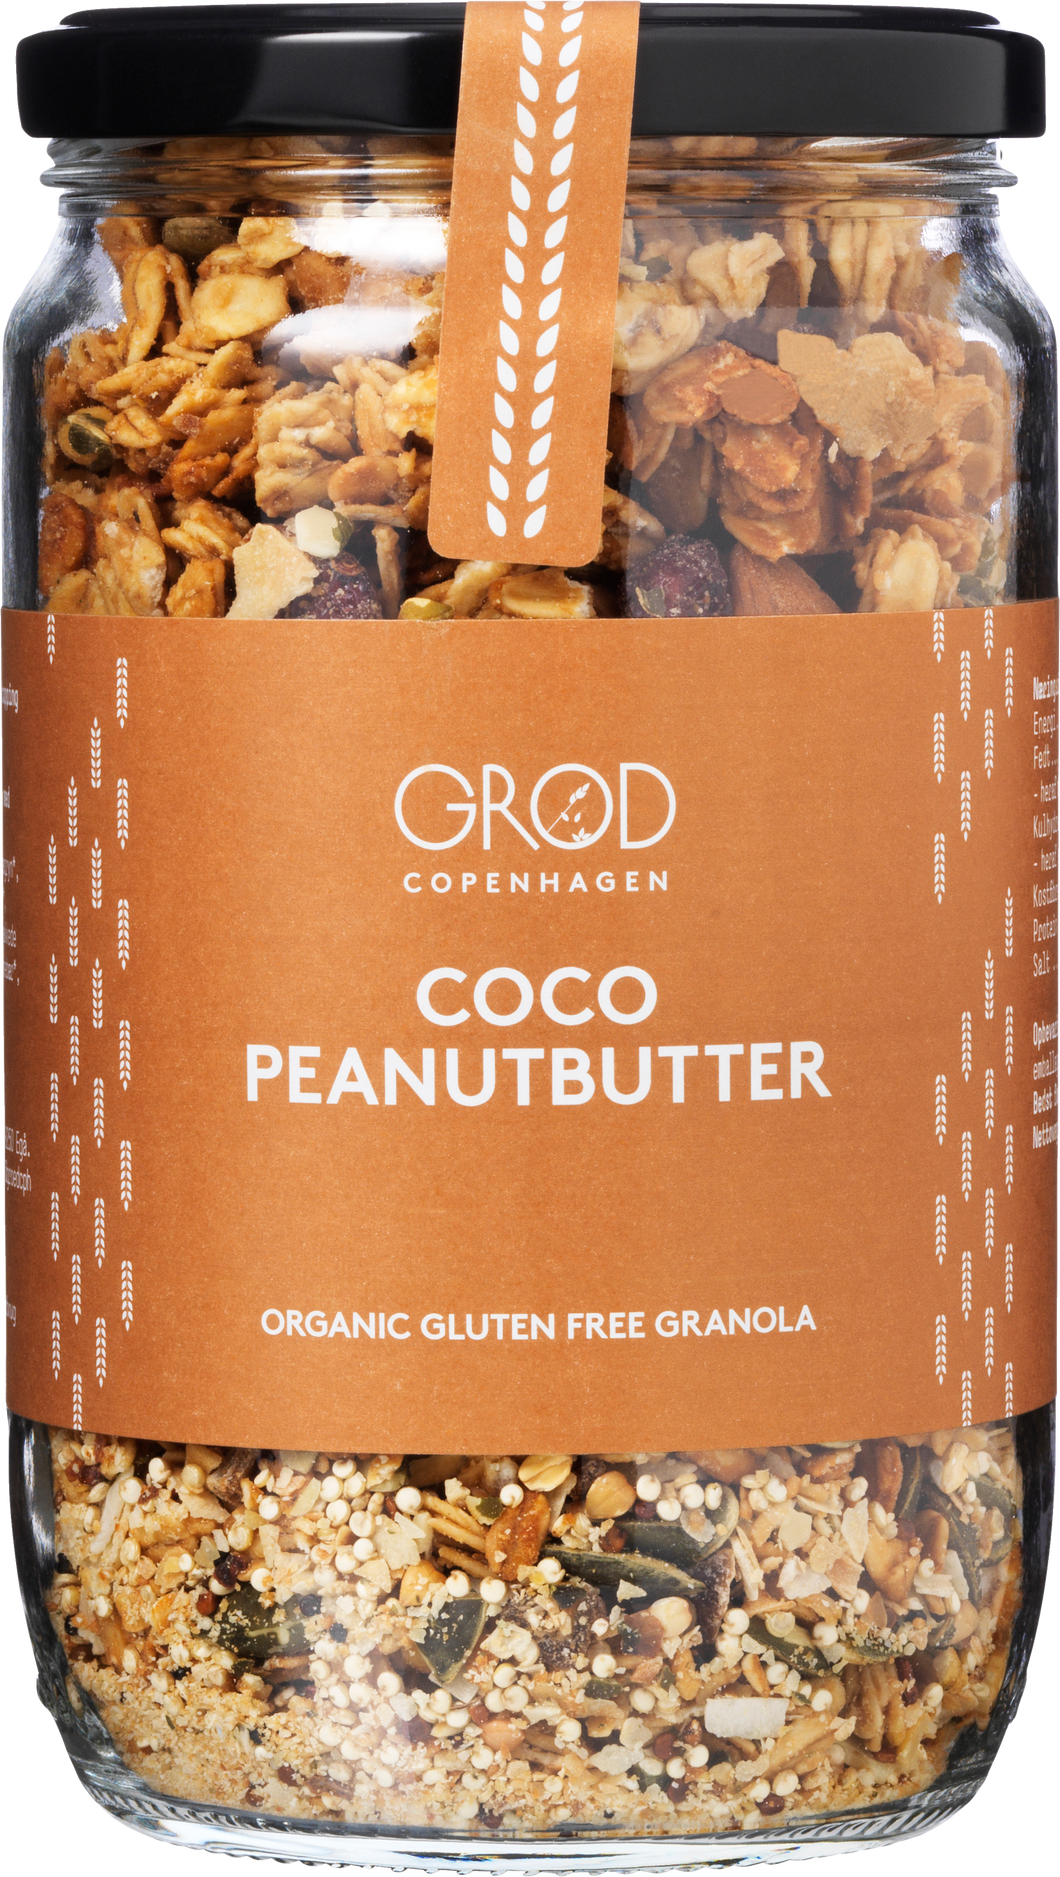 Granola - Coco Peanutbutter